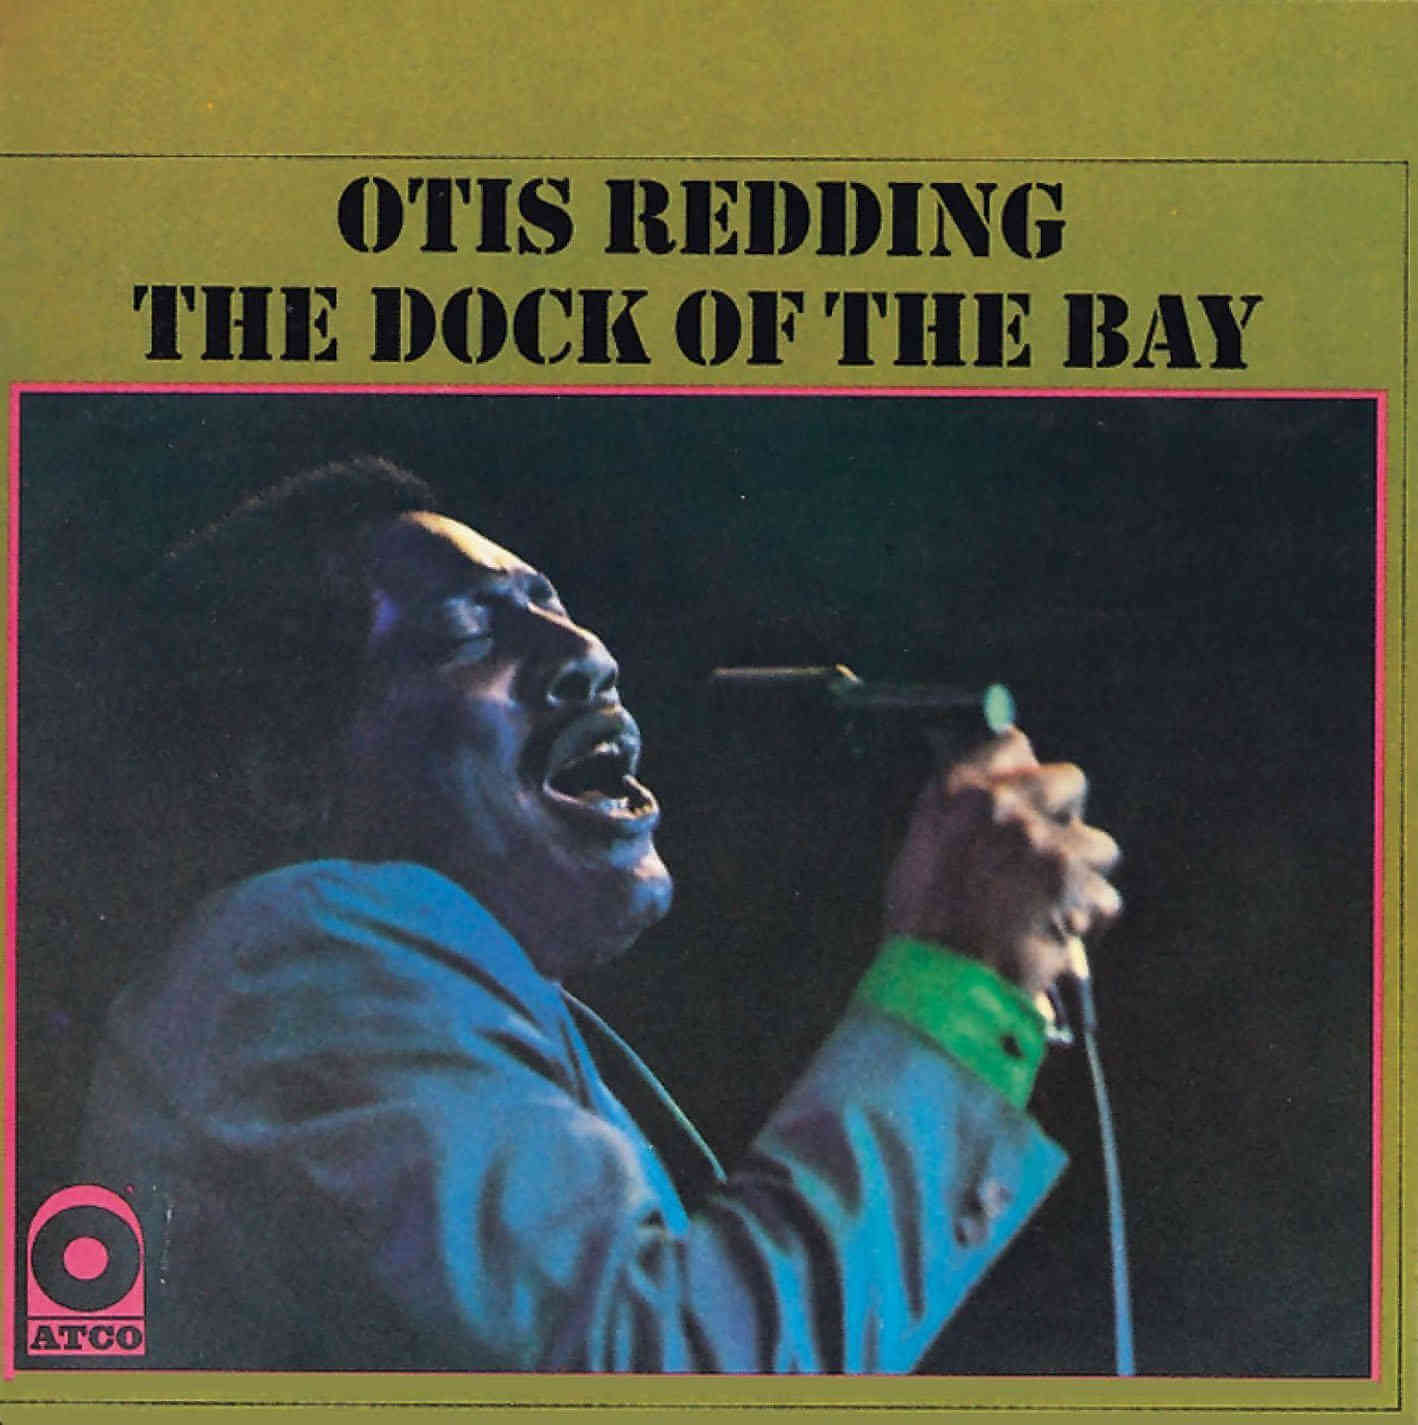 Alert Kommuner dæmning The Dock of The Bay" album by Otis Redding [Review]